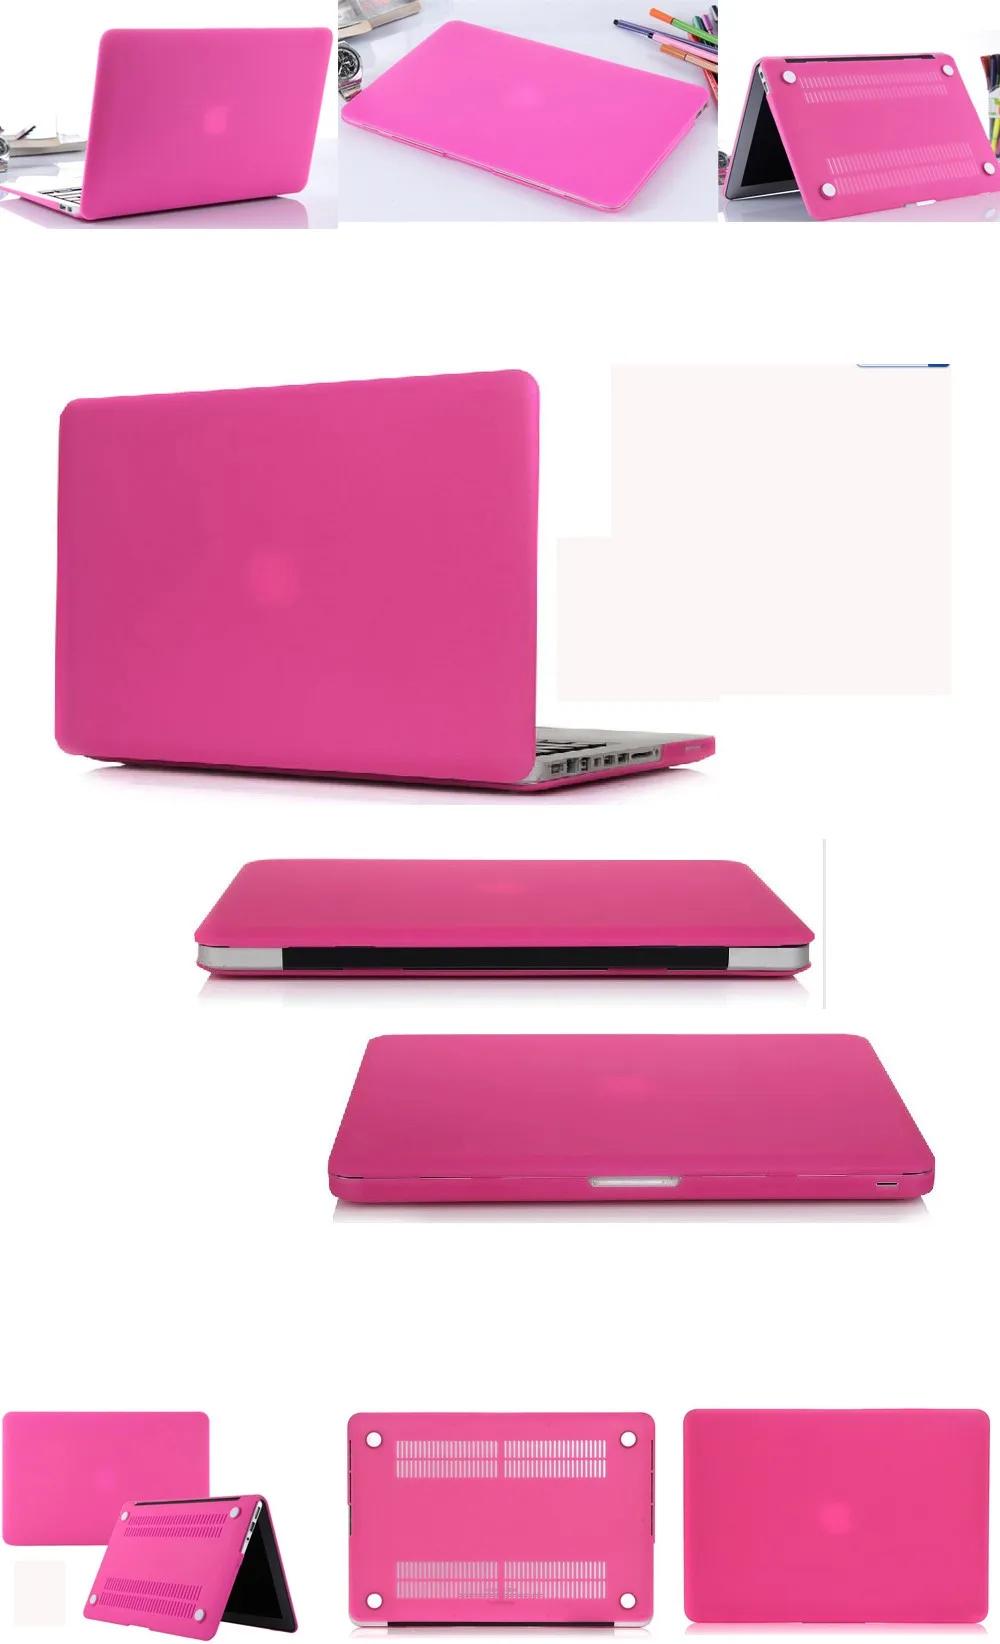 Матовый чехол для ноутбука, защитный чехол для mac book macbook pro 12 13 air 11 13 15,4 touch bar, чехол для ноутбука, аксессуары для компьютера